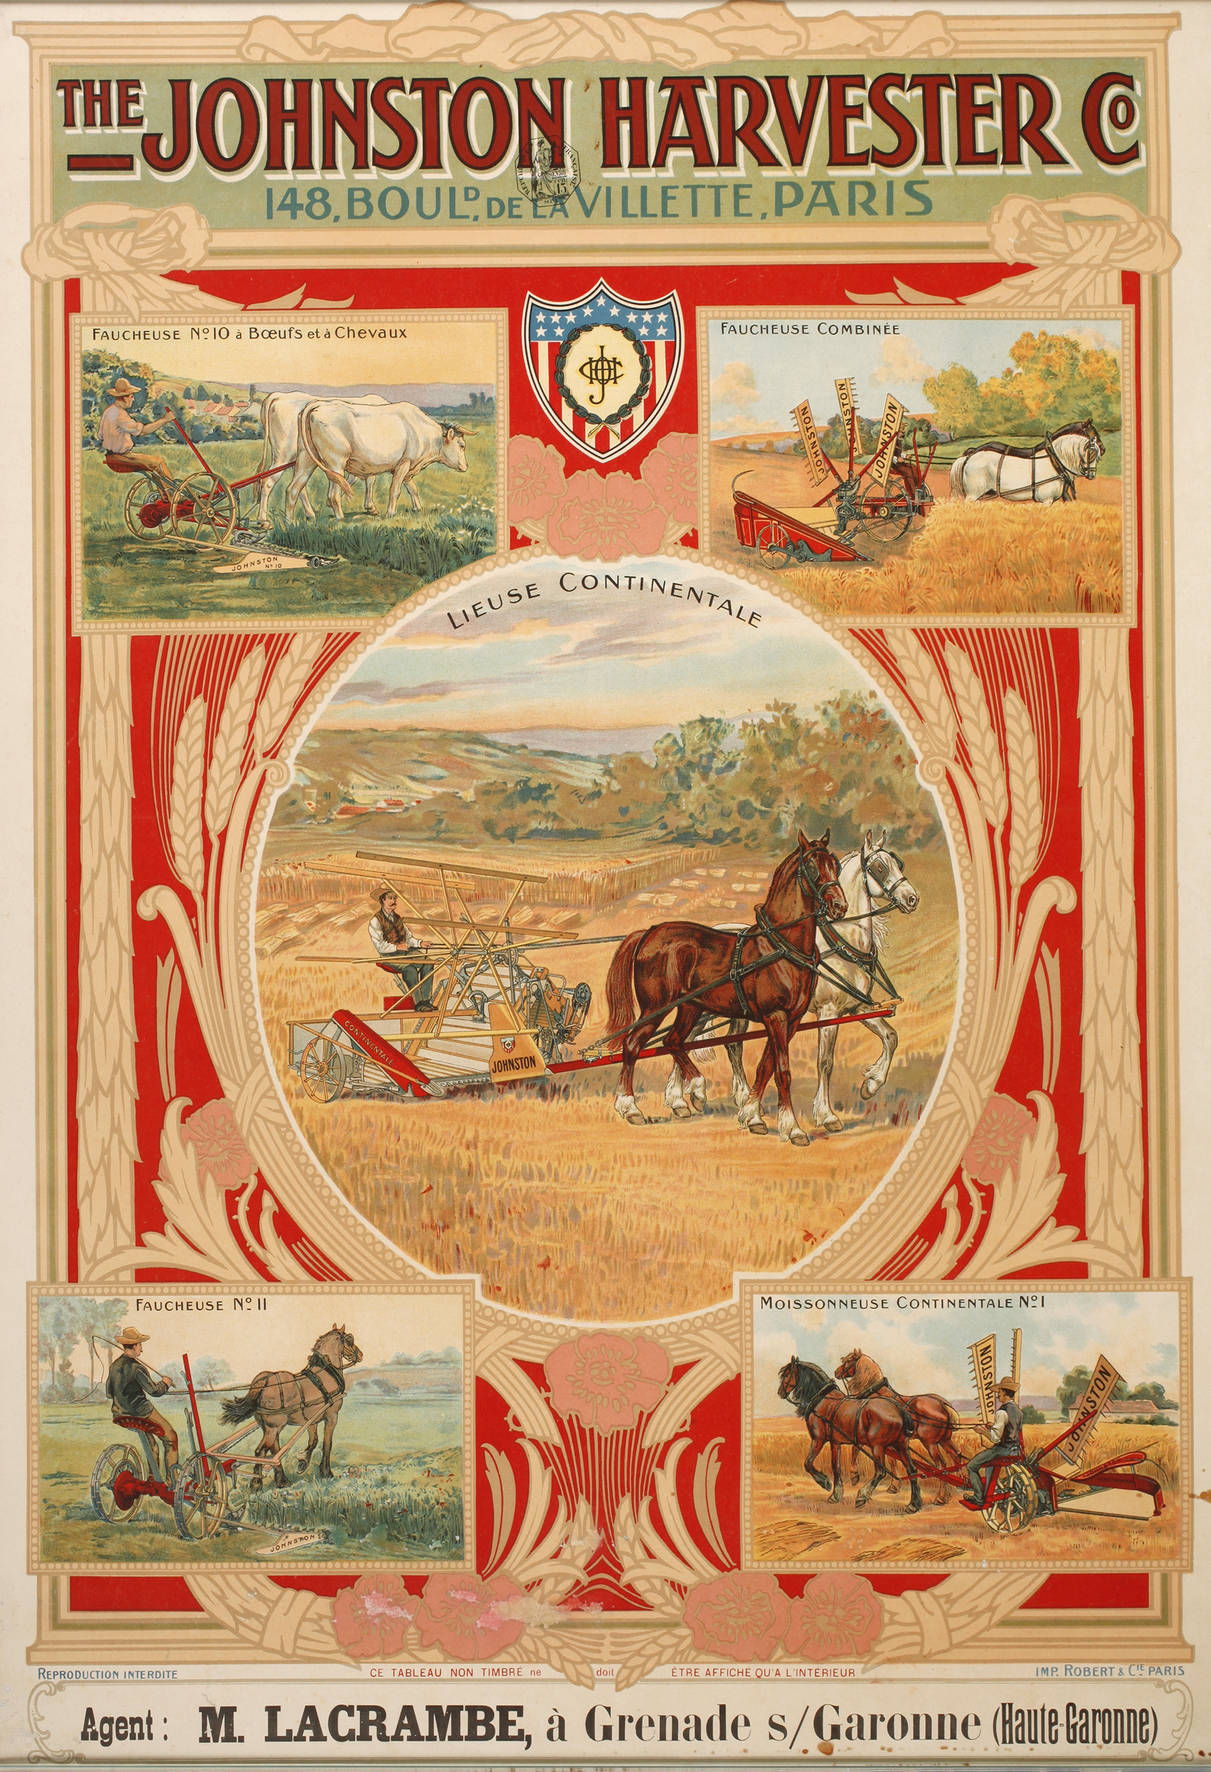 Werbeplakat The Johnston Harvester Co.